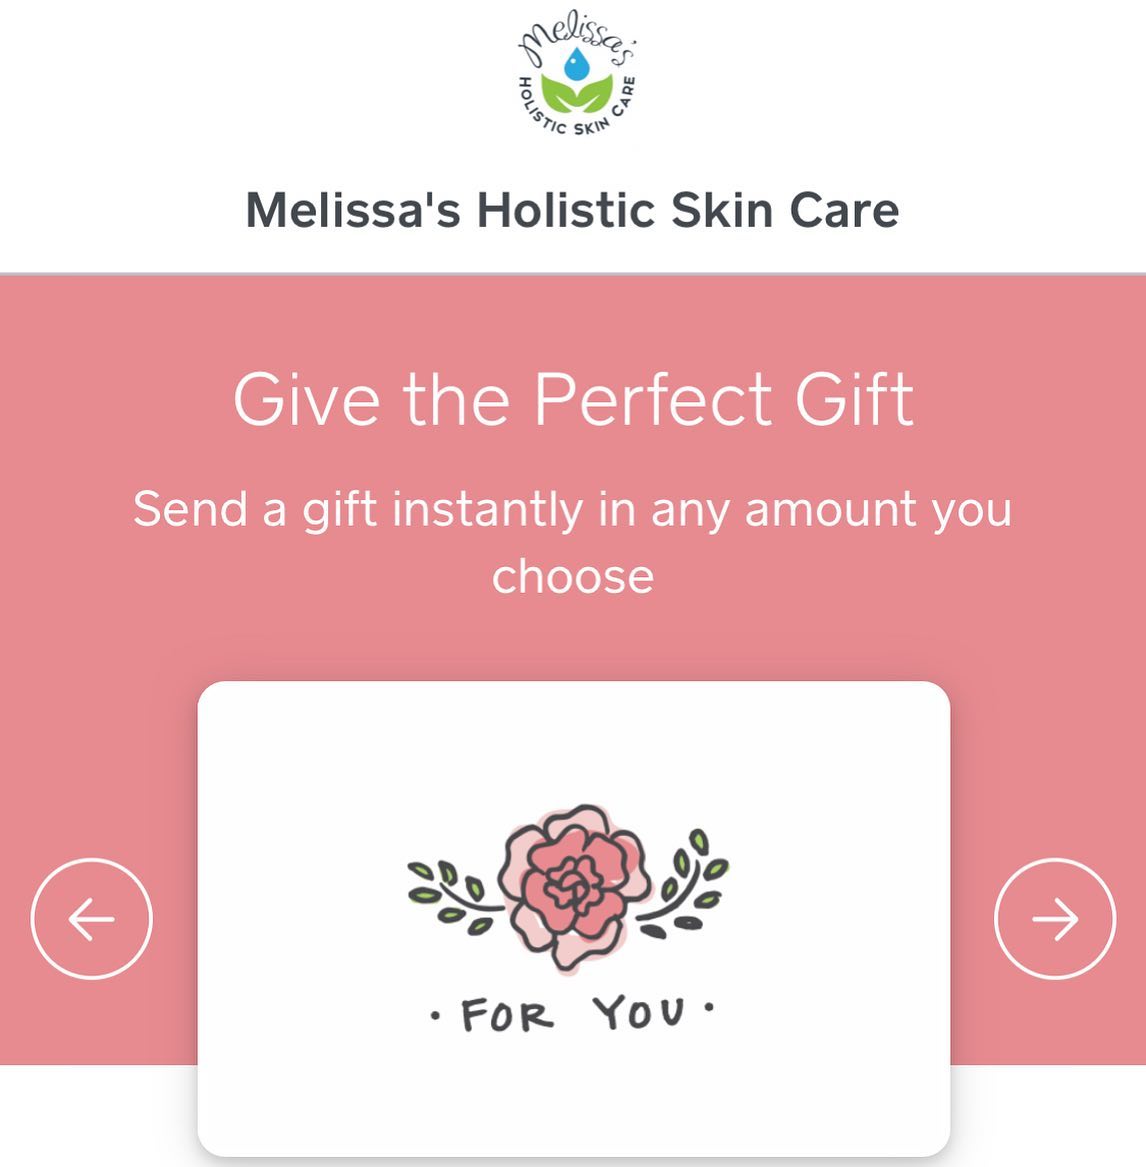 Melissa's Holistic Skin Care